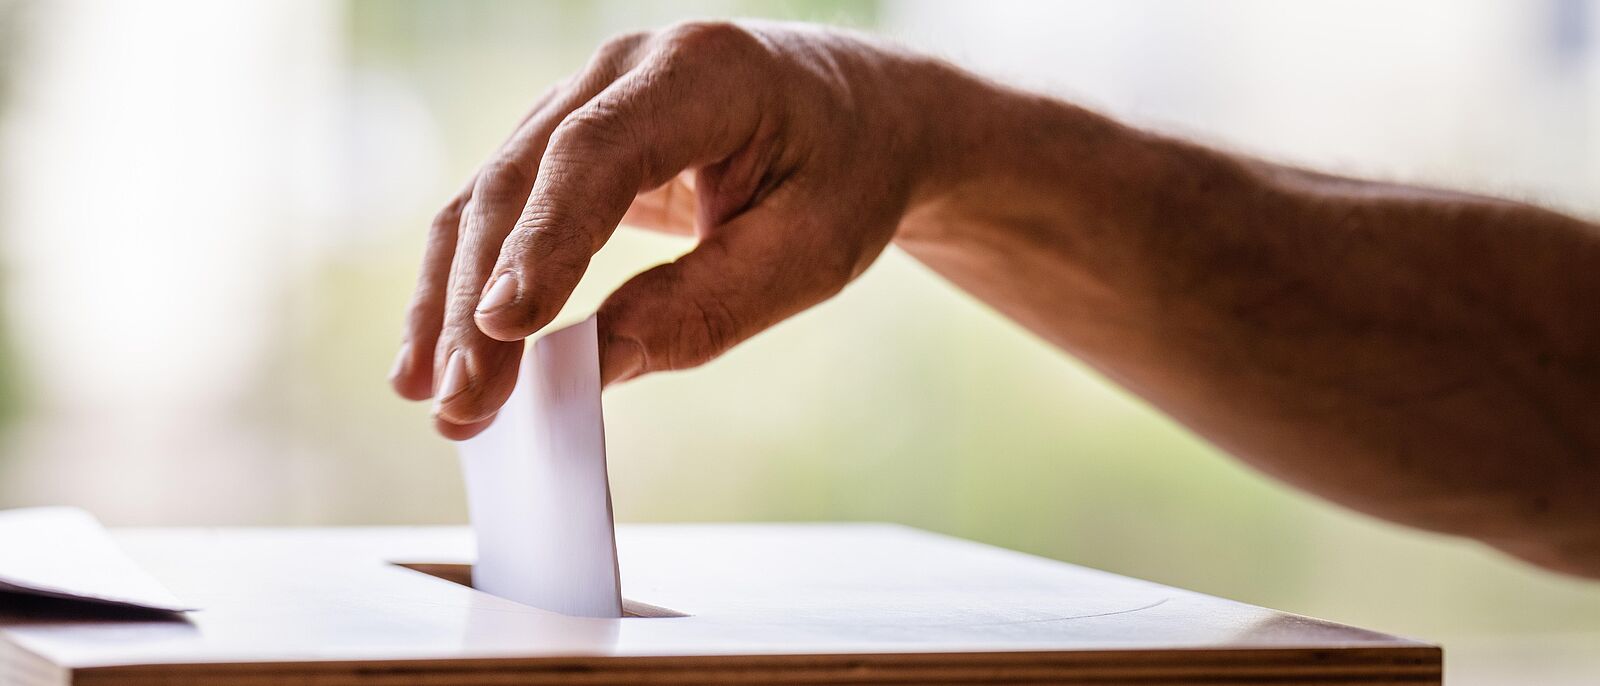 Makroaufnahme einer Hand die gerade einen gefalteten Wahlzettel in den Spalt der Wahlurne einwirft.